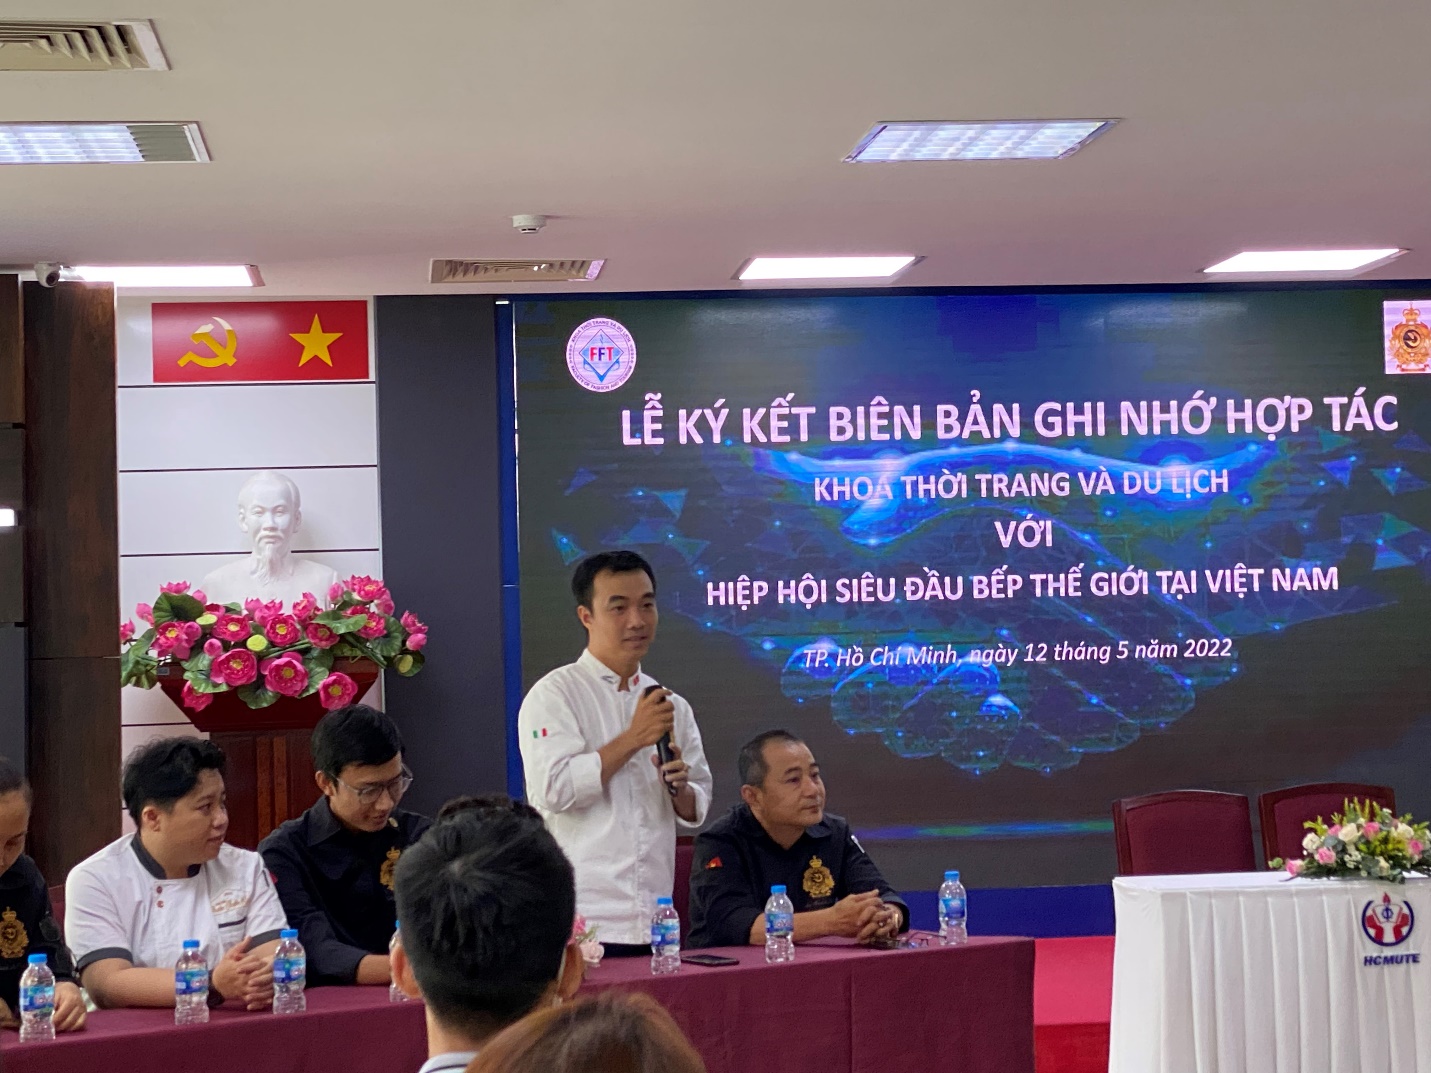 Hiệp hội Siêu đầu bếp thế giới tại Việt Nam hỗ trợ sinh viên ngành du lịch - 2